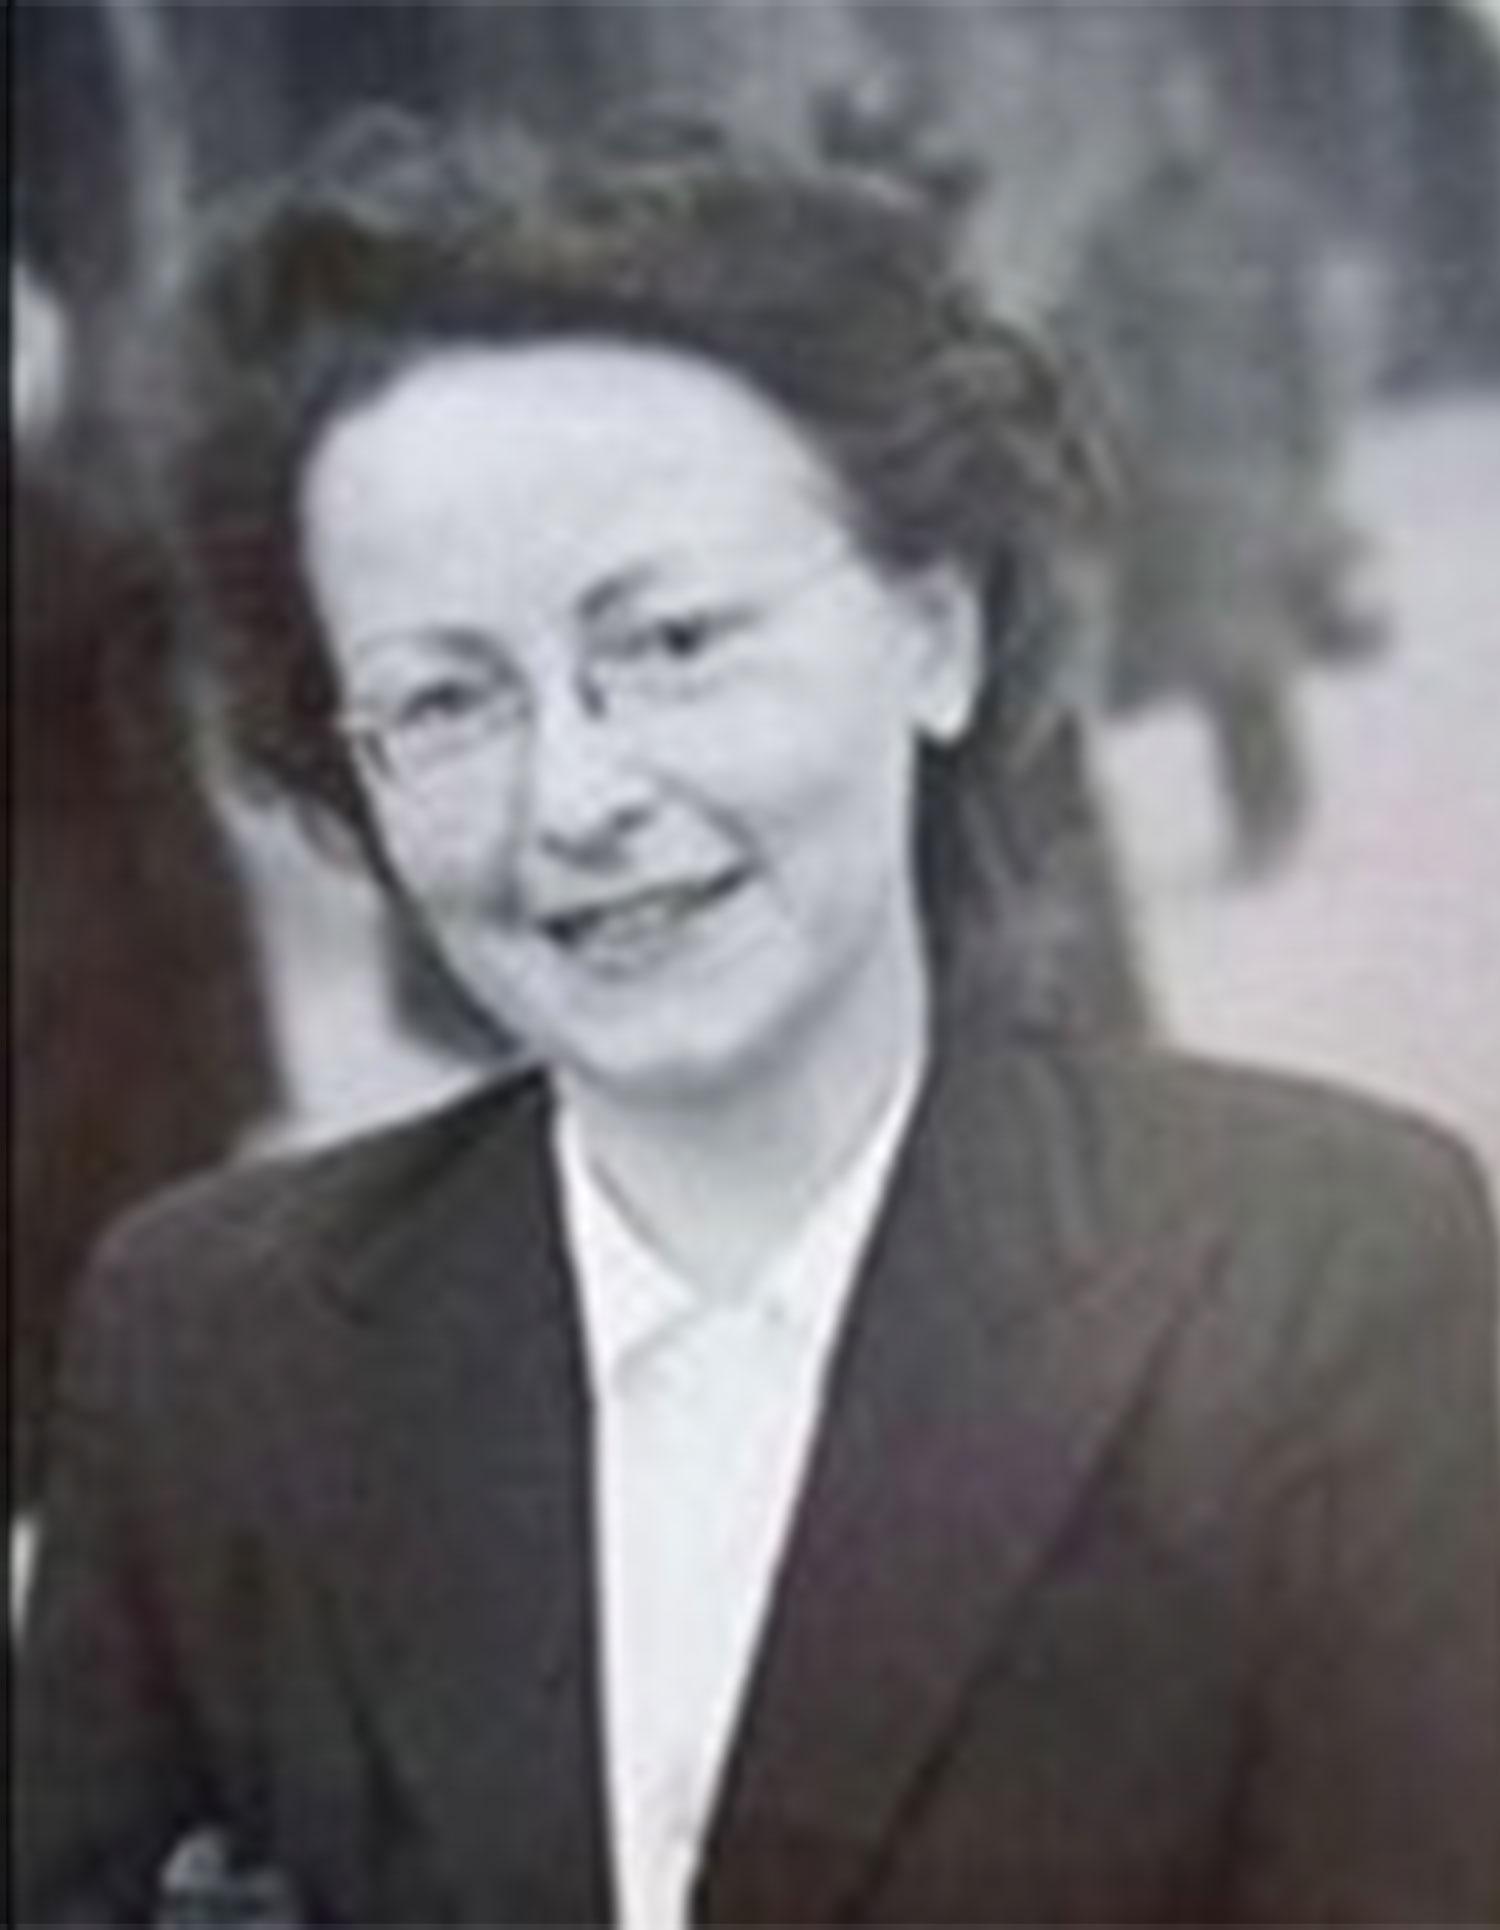 Brunhilde Pomsel omkring 1943.